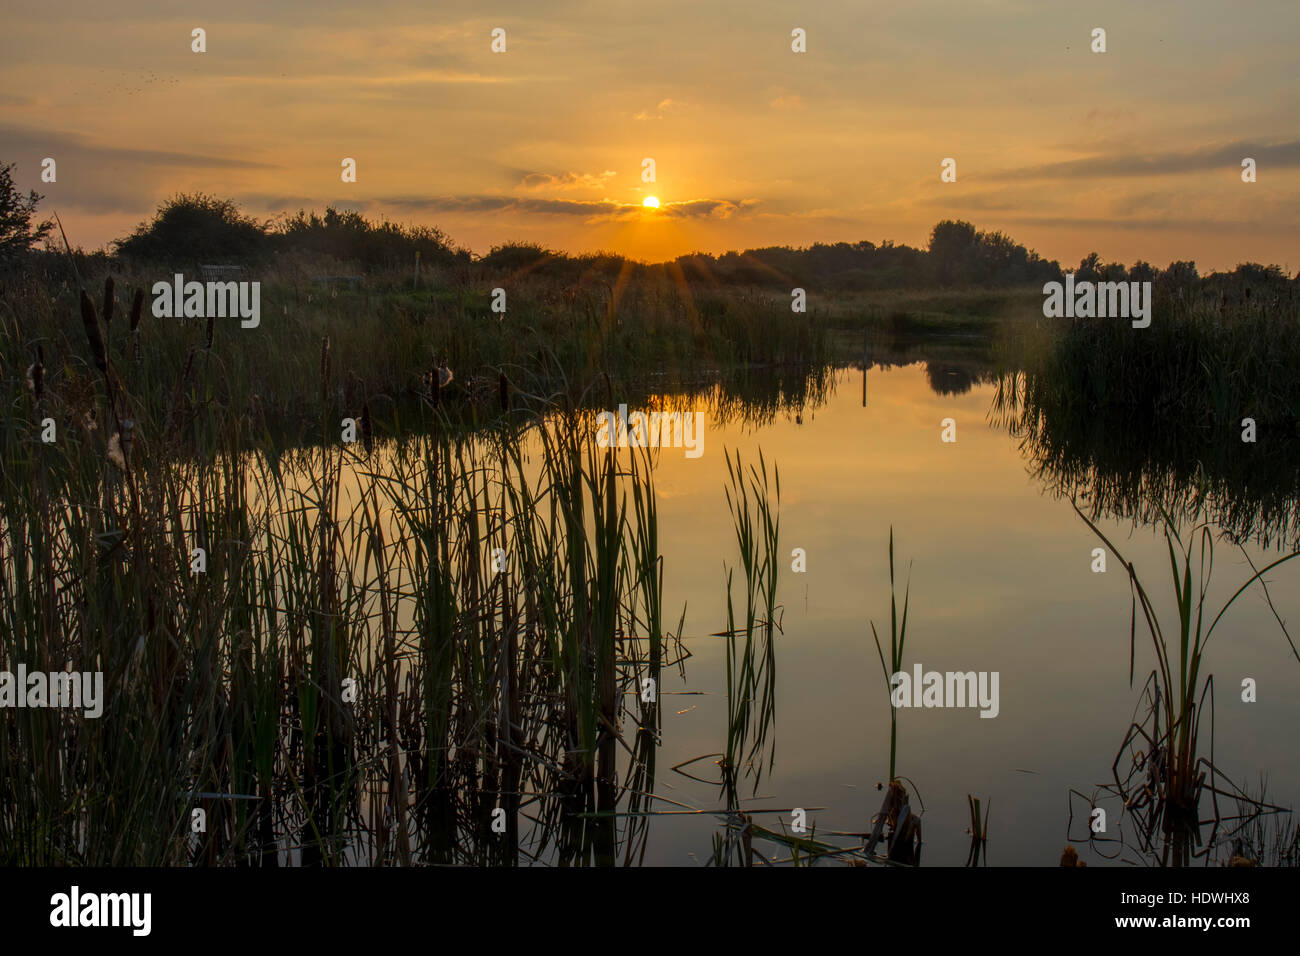 Vue sur la piscine d'eau douce et des marais au coucher du soleil. La réserve RSPB Titchwell Marsh. Norfolk, Angleterre. Octobre. Banque D'Images